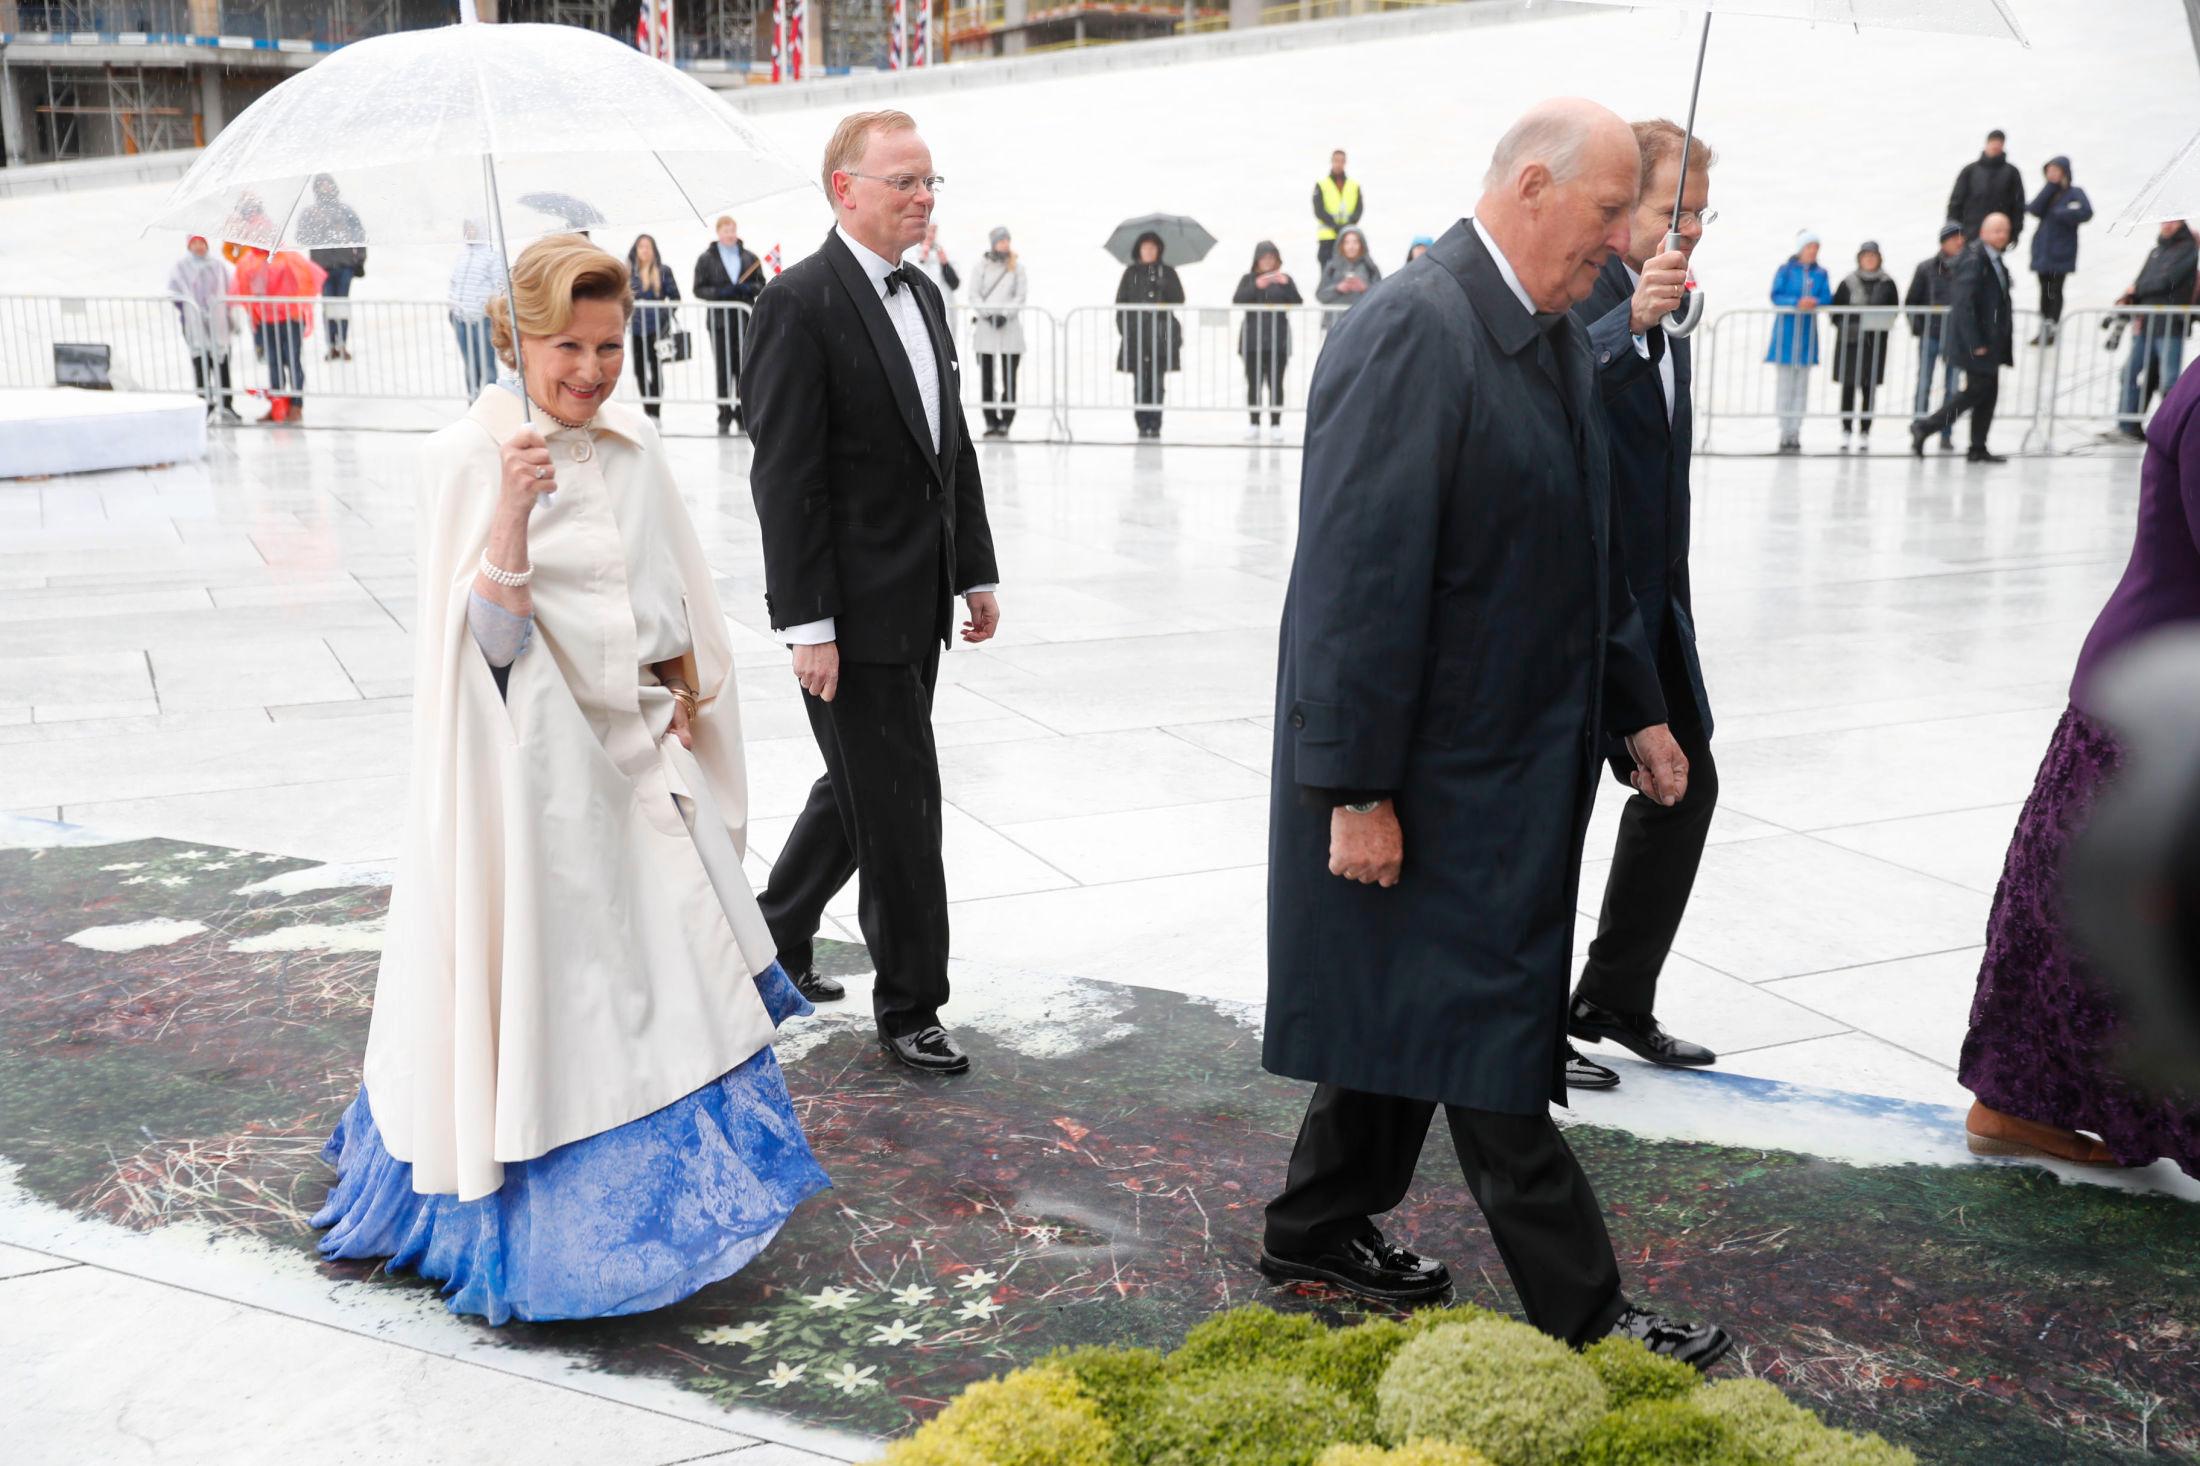 FOTSID: Dronning Sonja hadde på seg lang, hvit cape da hun ankom Operaen. Under capen kan man se en blå kjole med broderier.